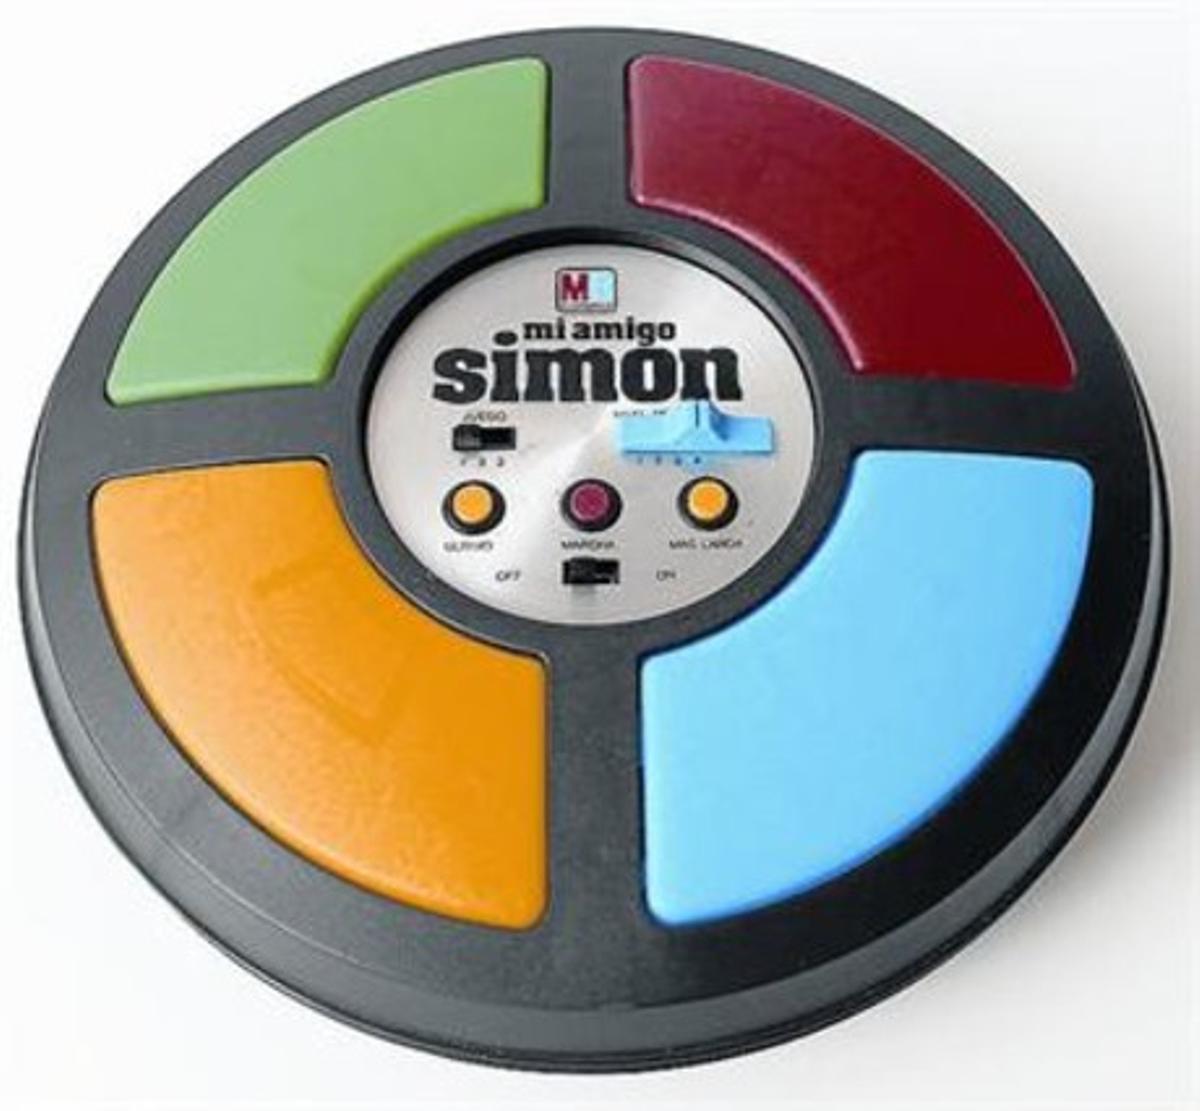 SIMON. UNA NAU ESPACIAL. La joguina més tecnològica dels anys 80 va ser elSimon, en què guanyava el que tingués més bona memòria per retenir sons i colors.